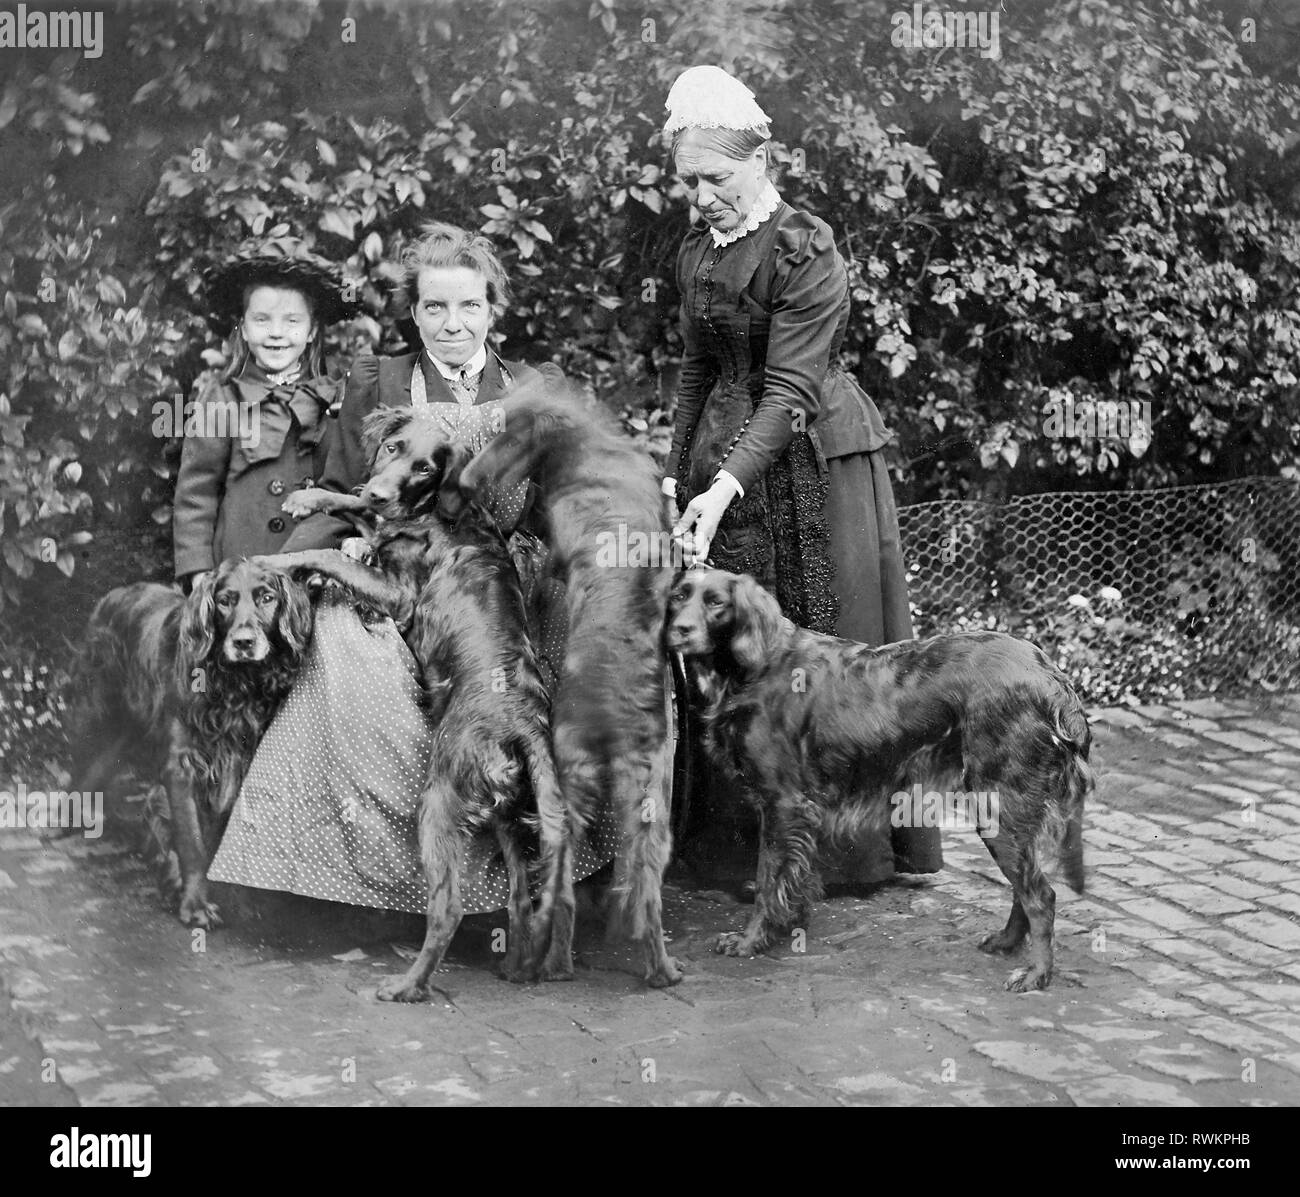 Eine Viktorianische und Edwardianische Gruppe Foto von einem jungen Mädchen, zwei weibliche Erwachsene und was aussieht wie vier Flat - Coated Retriever Hunde. Stockfoto